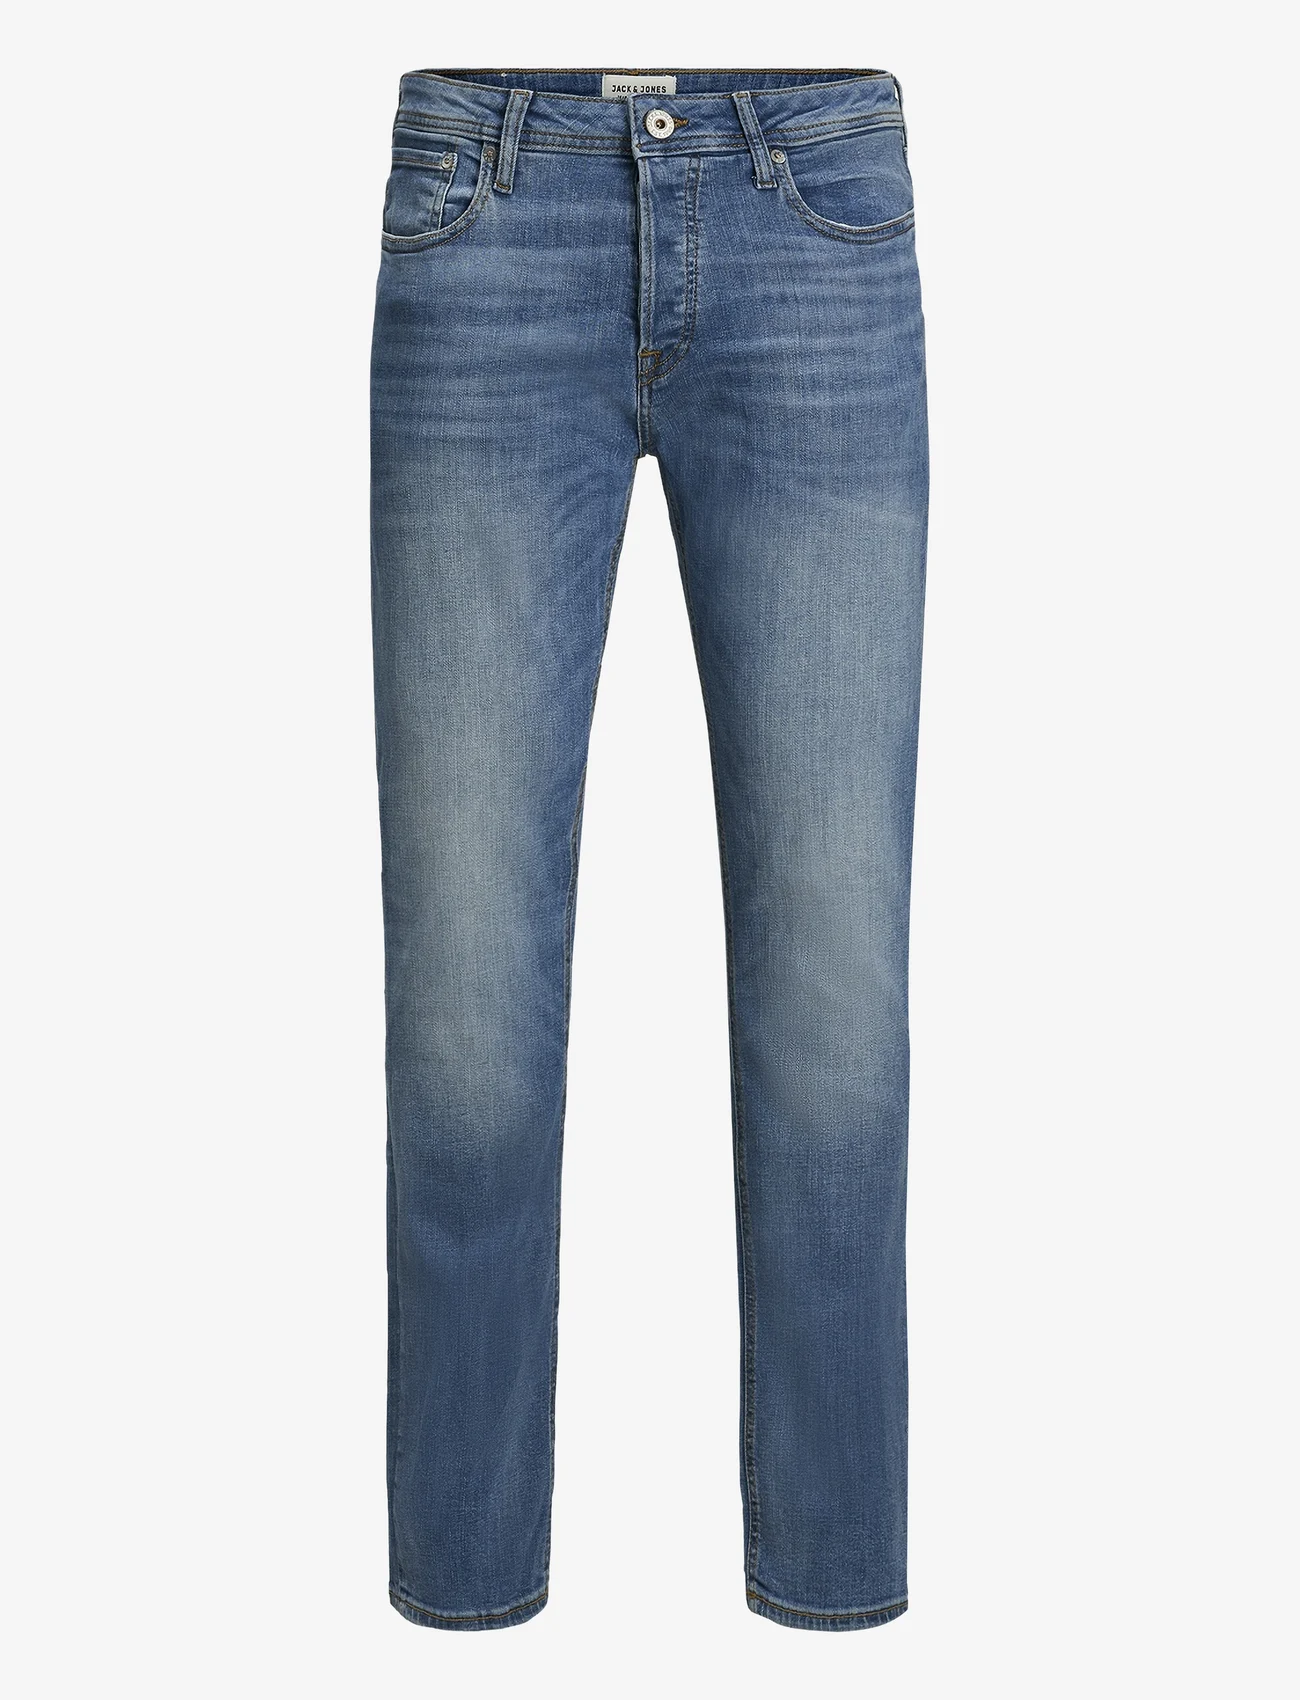 Jack & Jones - JJITIM JJORIGINAL AM 781 50SPS NOOS - slim jeans - blue denim - 1